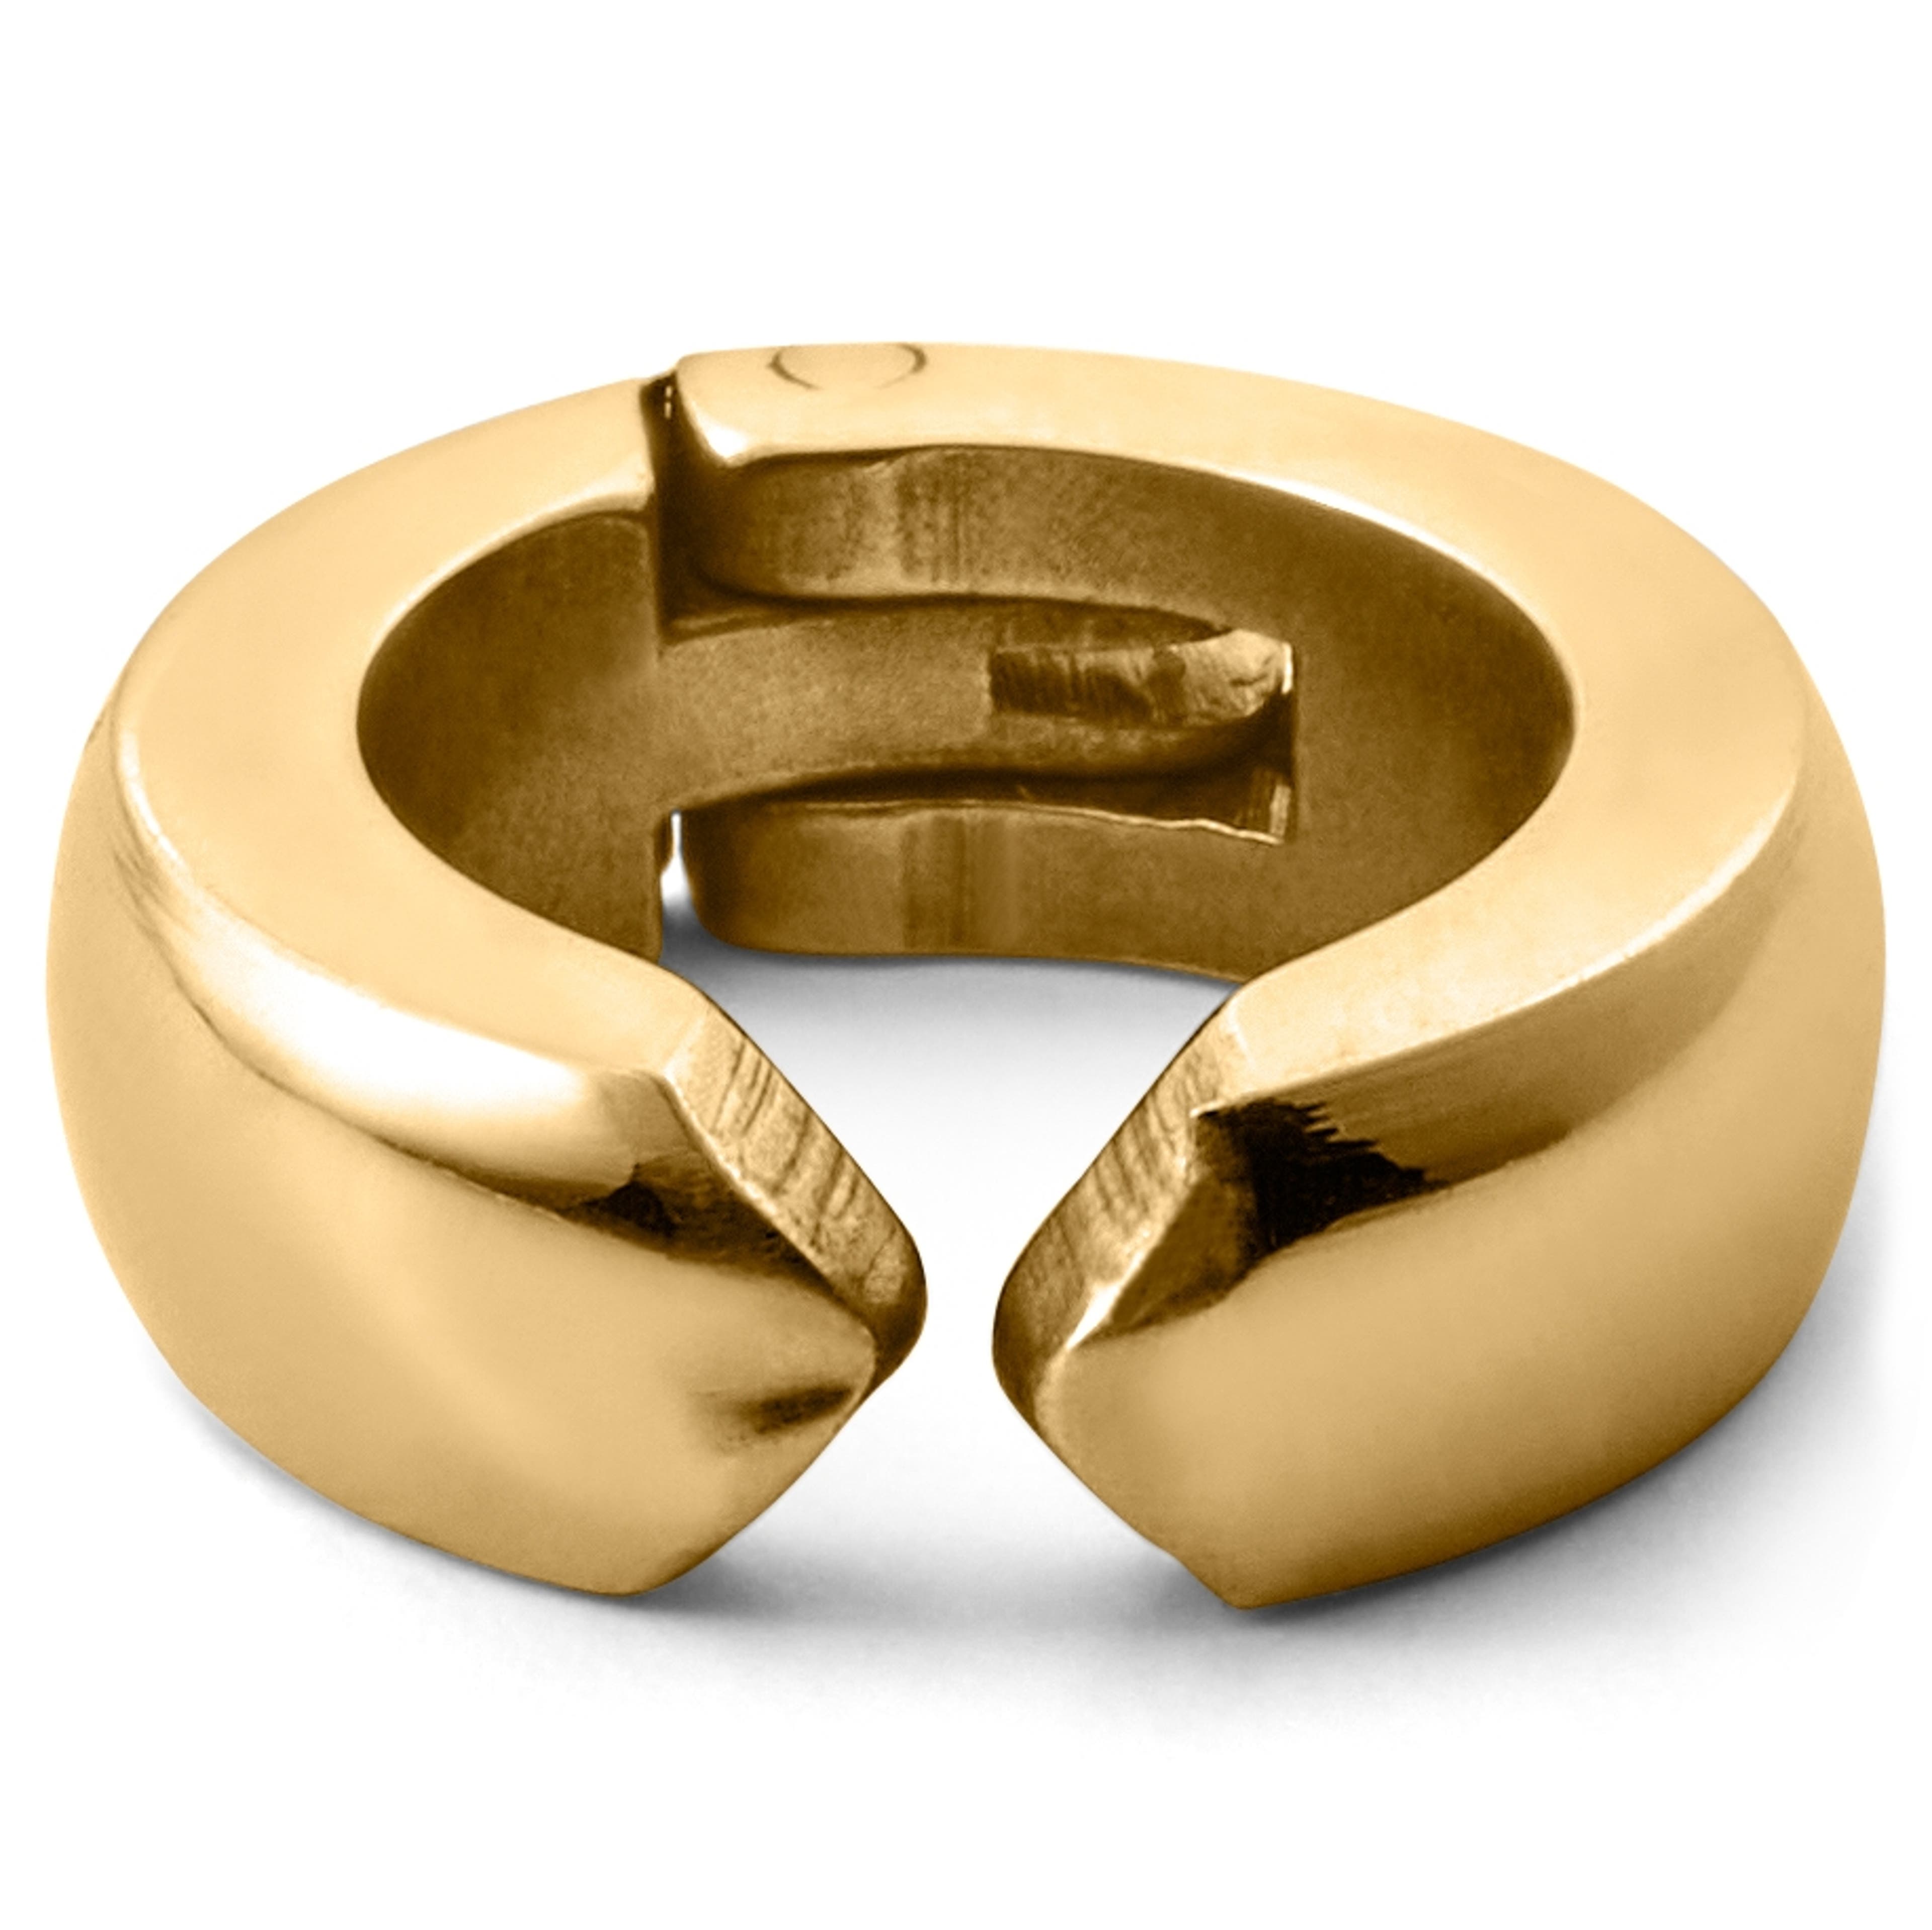 Floyd náušnice kroužek klips ve zlaté barvě